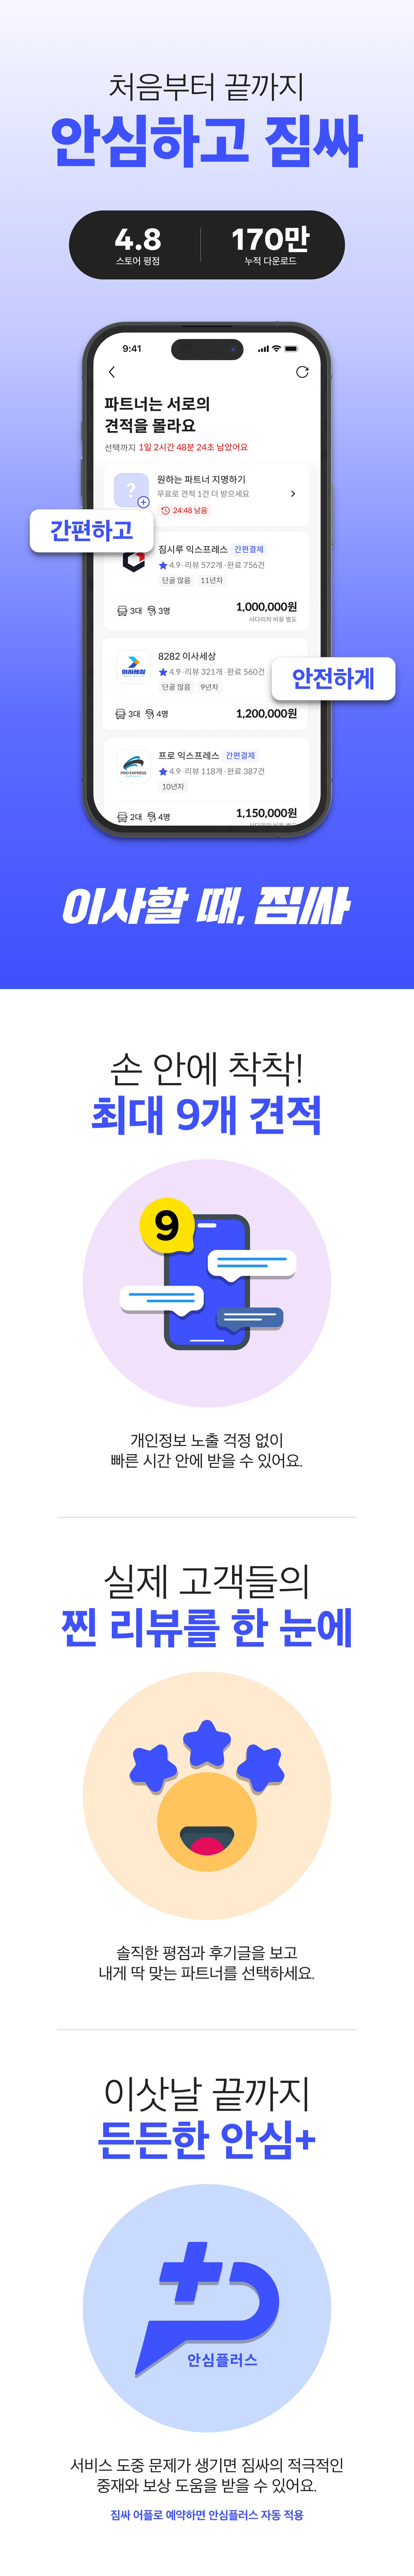 외부페이지(심플리스)_랜딩_서비스 소개